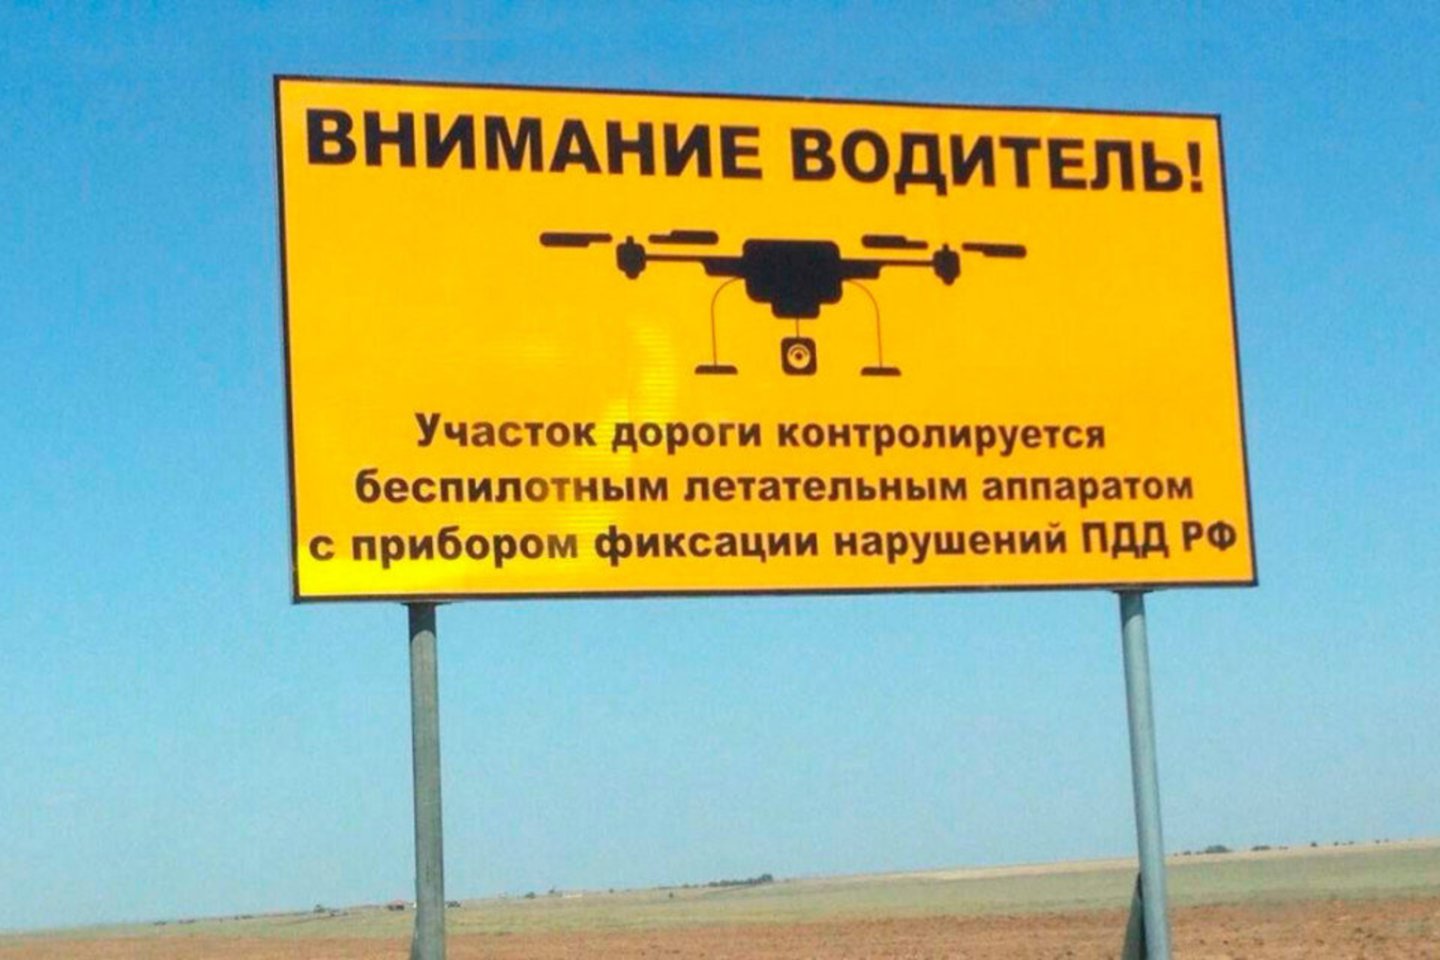 Rusijoje su dronu pradėta fiksuoti išvažiavimą į priešpriešinę eismo juostą ir judėjimą kelio pakraščiu.<br>www.autonews.ru. nuotr.